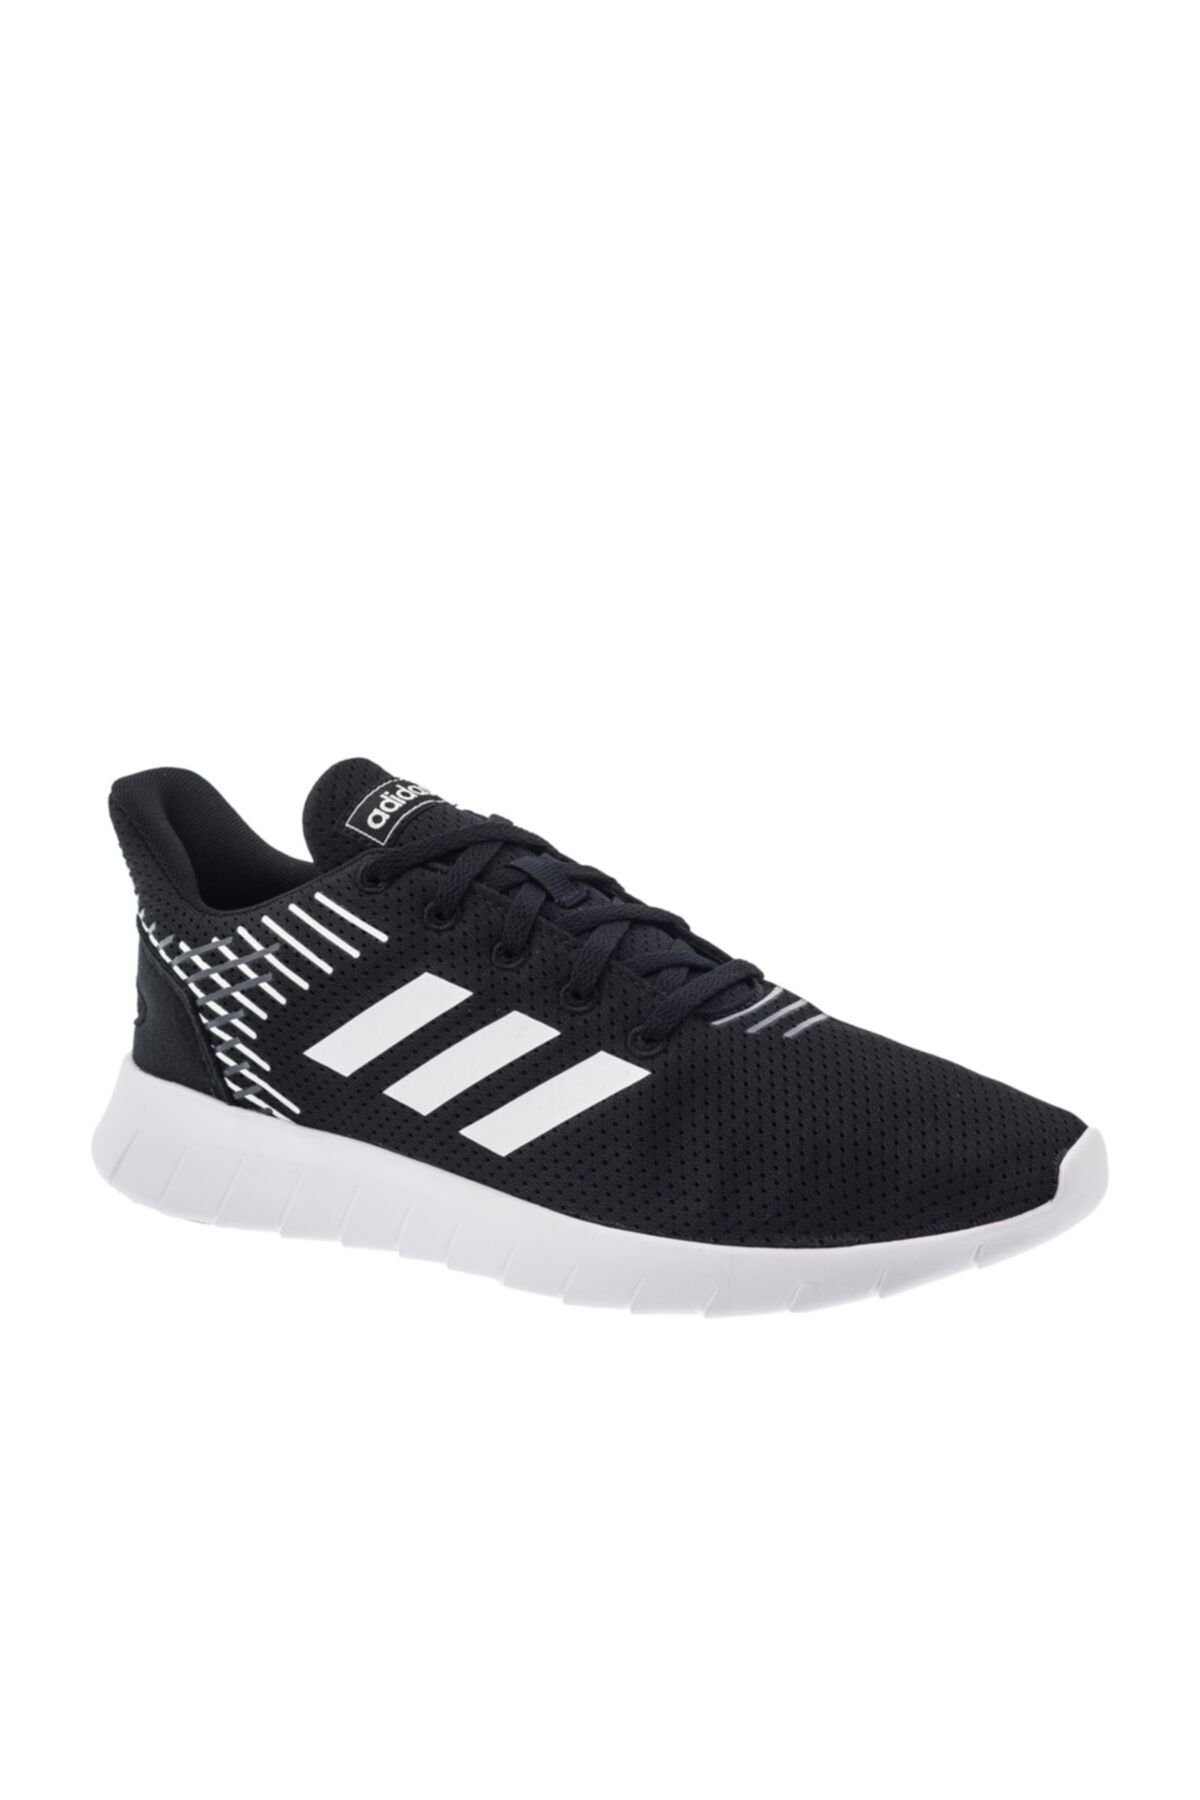 adidas Asweerun- Siyah Beyaz Erkek Koşu Ayakkabısı 100403387